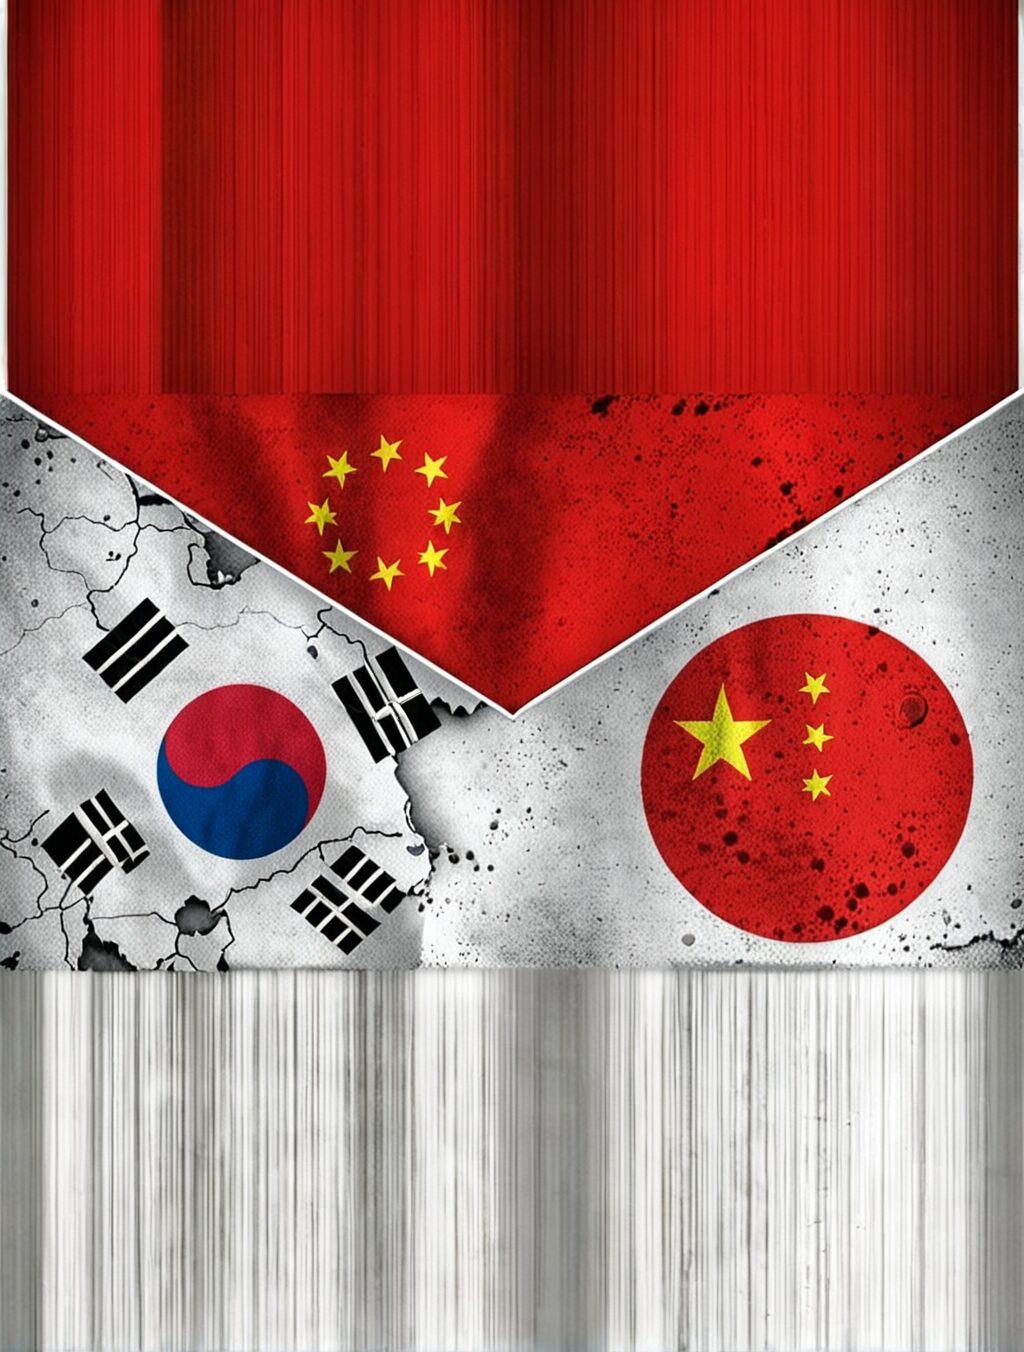 china vs japan vs korea culture